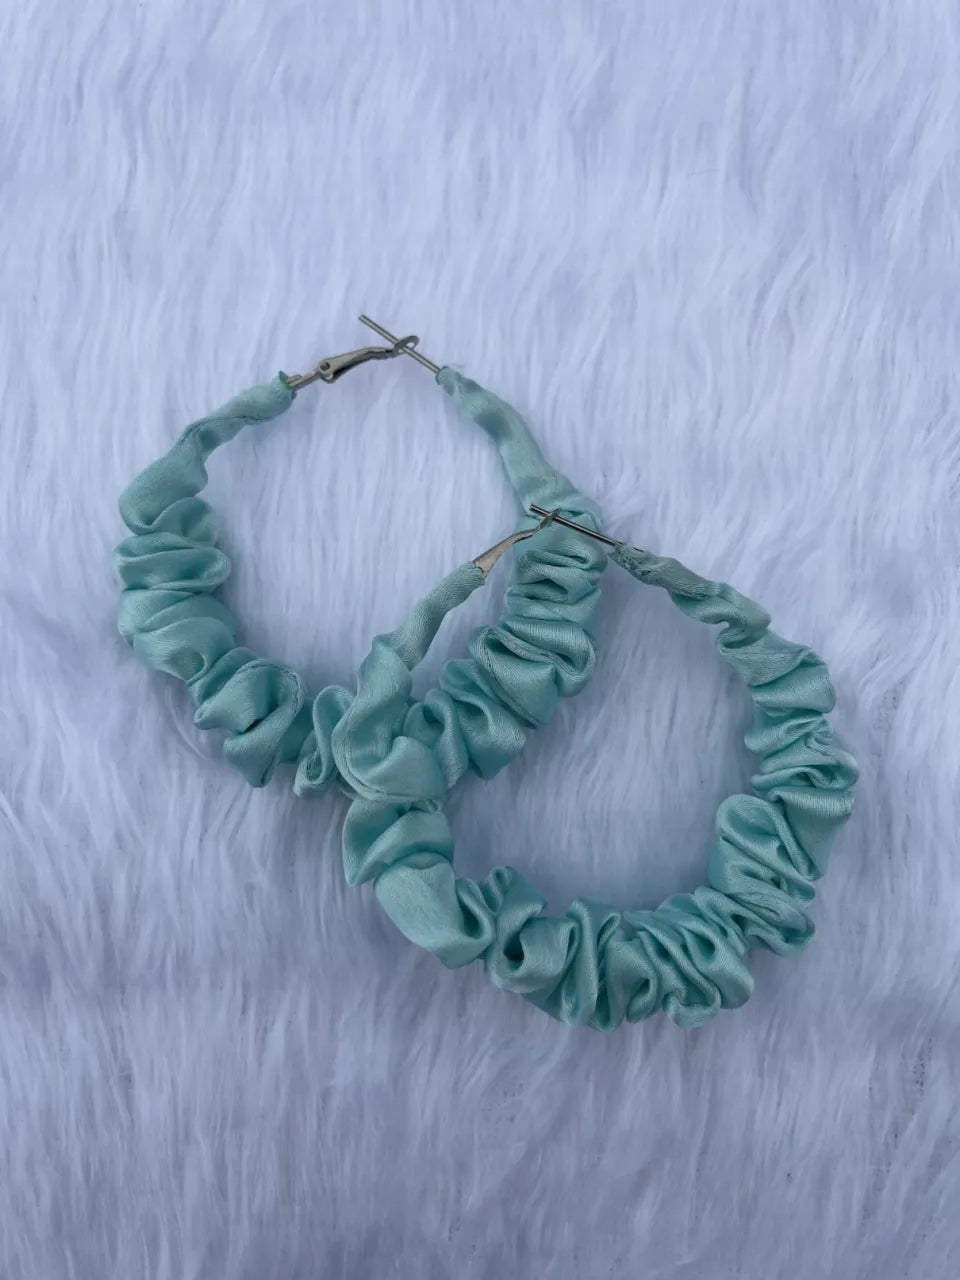 Combo Of Moon Style Scrunchies Watch + Earrings (Adriatic Mist Blue)